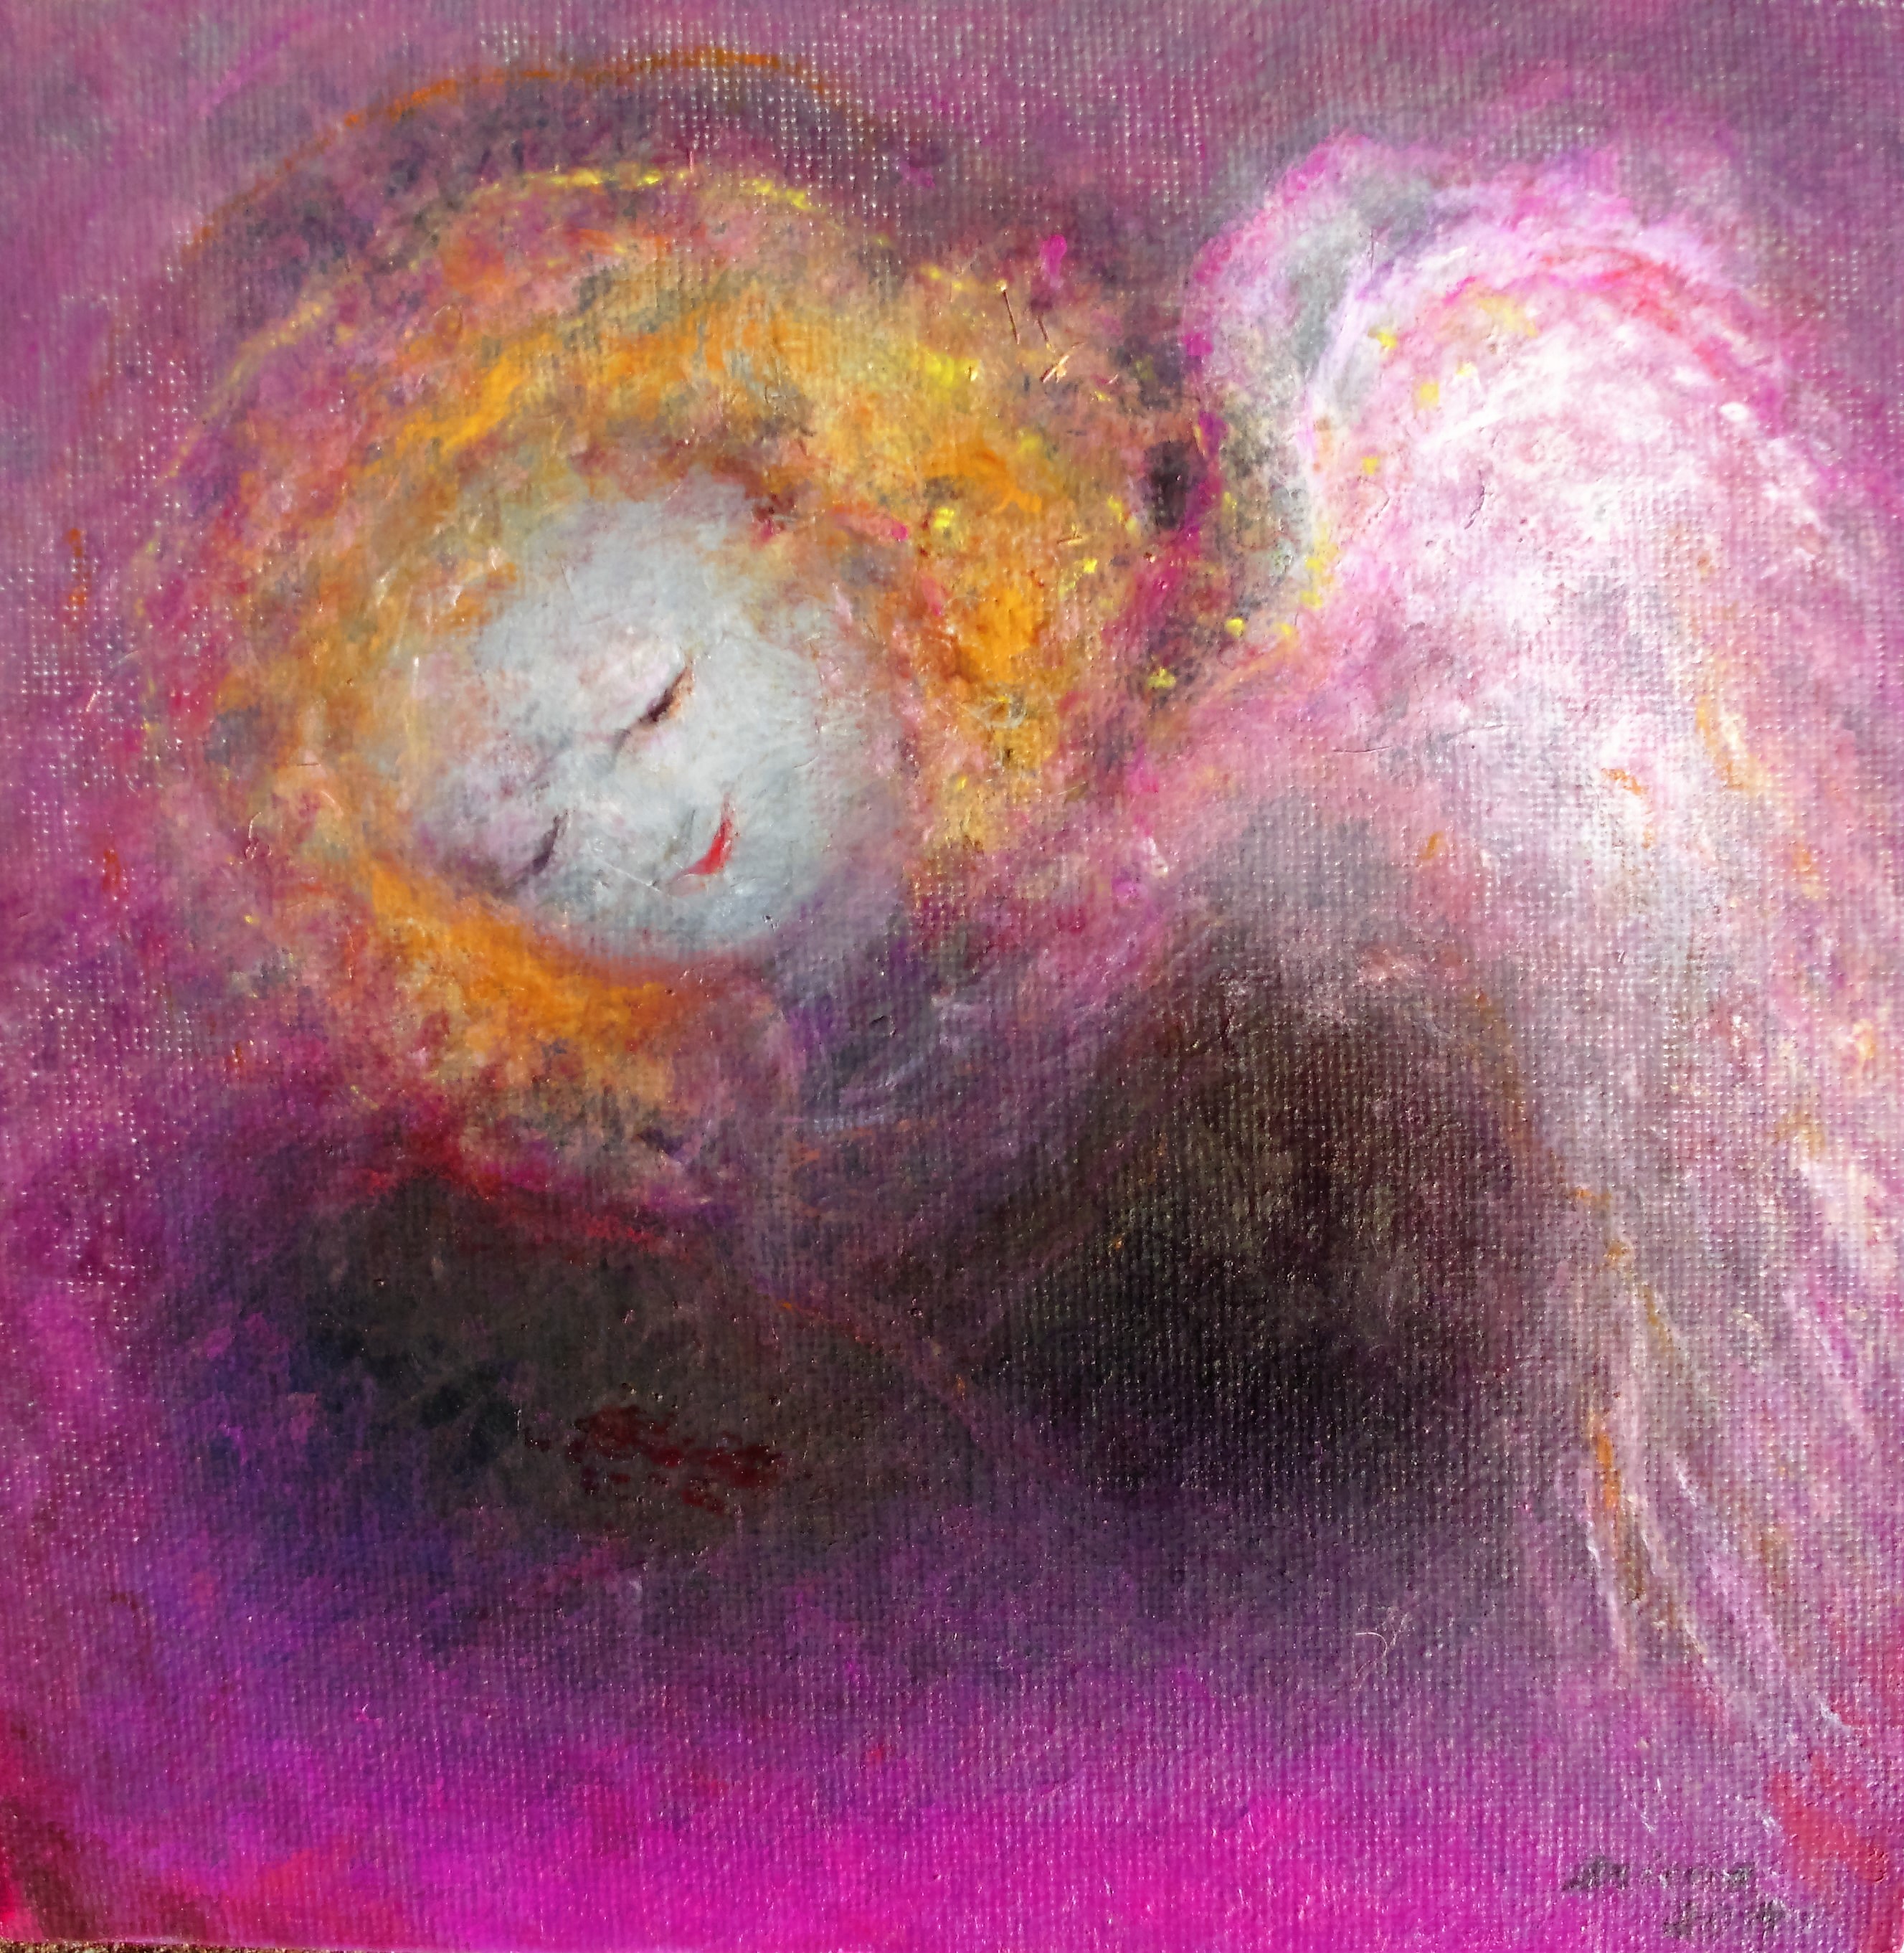 "Engel auf pinker Wolke", Öl/Leinwand, 20x20, 2009